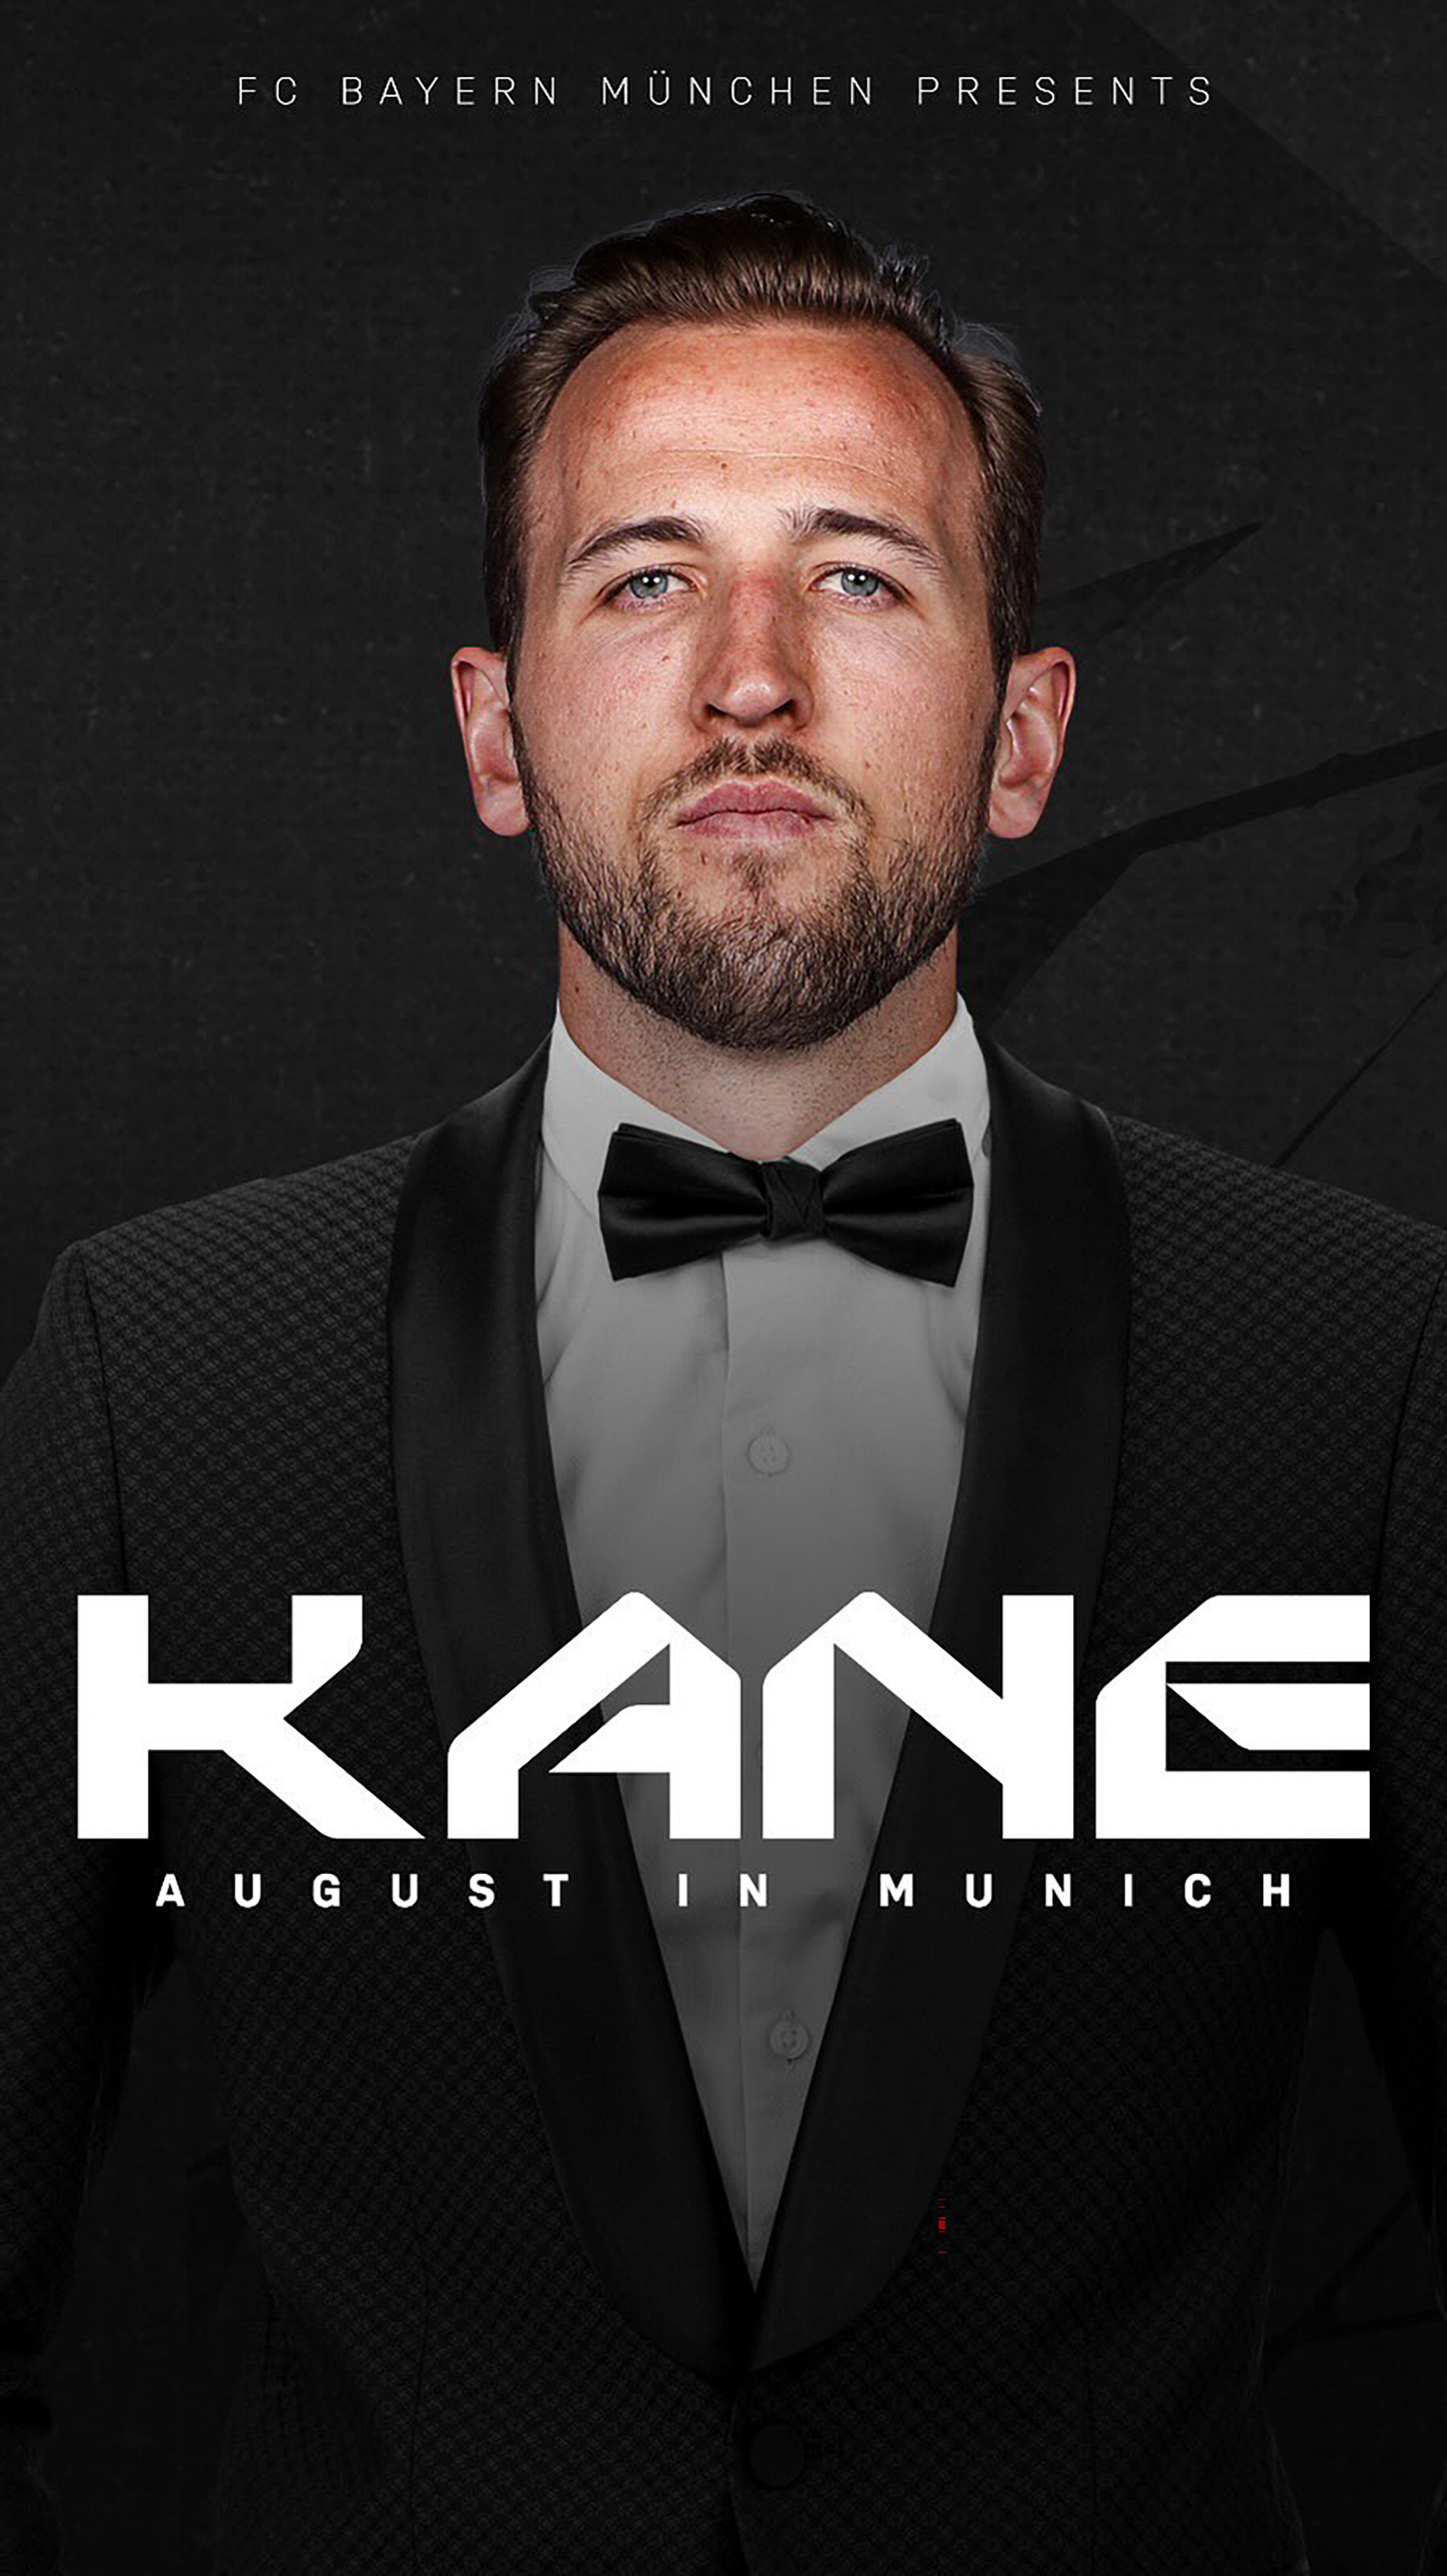 Die Bayern kündigten den Deal mit einem Video an, in dem Kane im Kino gezeigt wird, wie er in Anzug und Stiefel gestiefelt wird